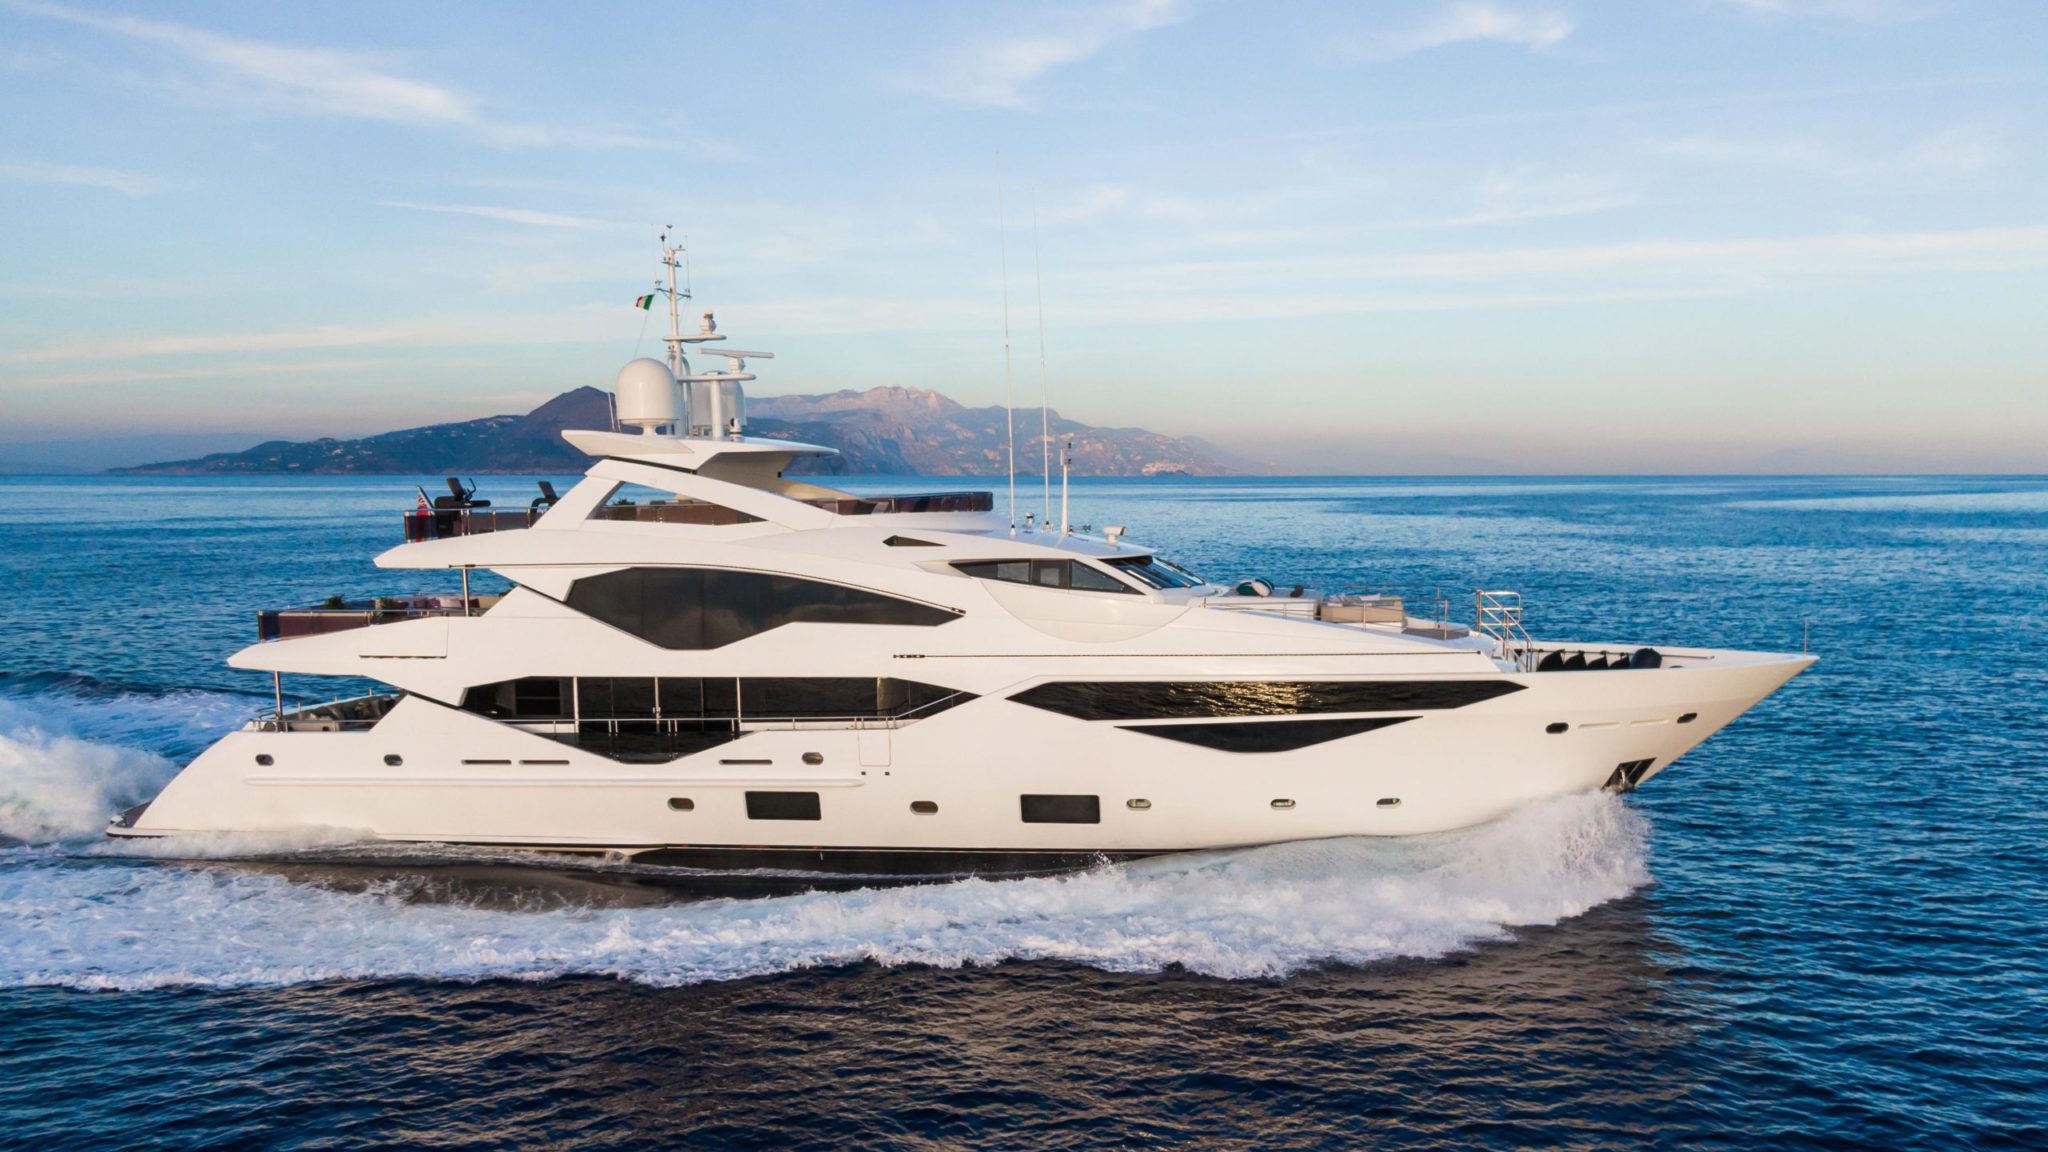 motor yachts for sale under 300k